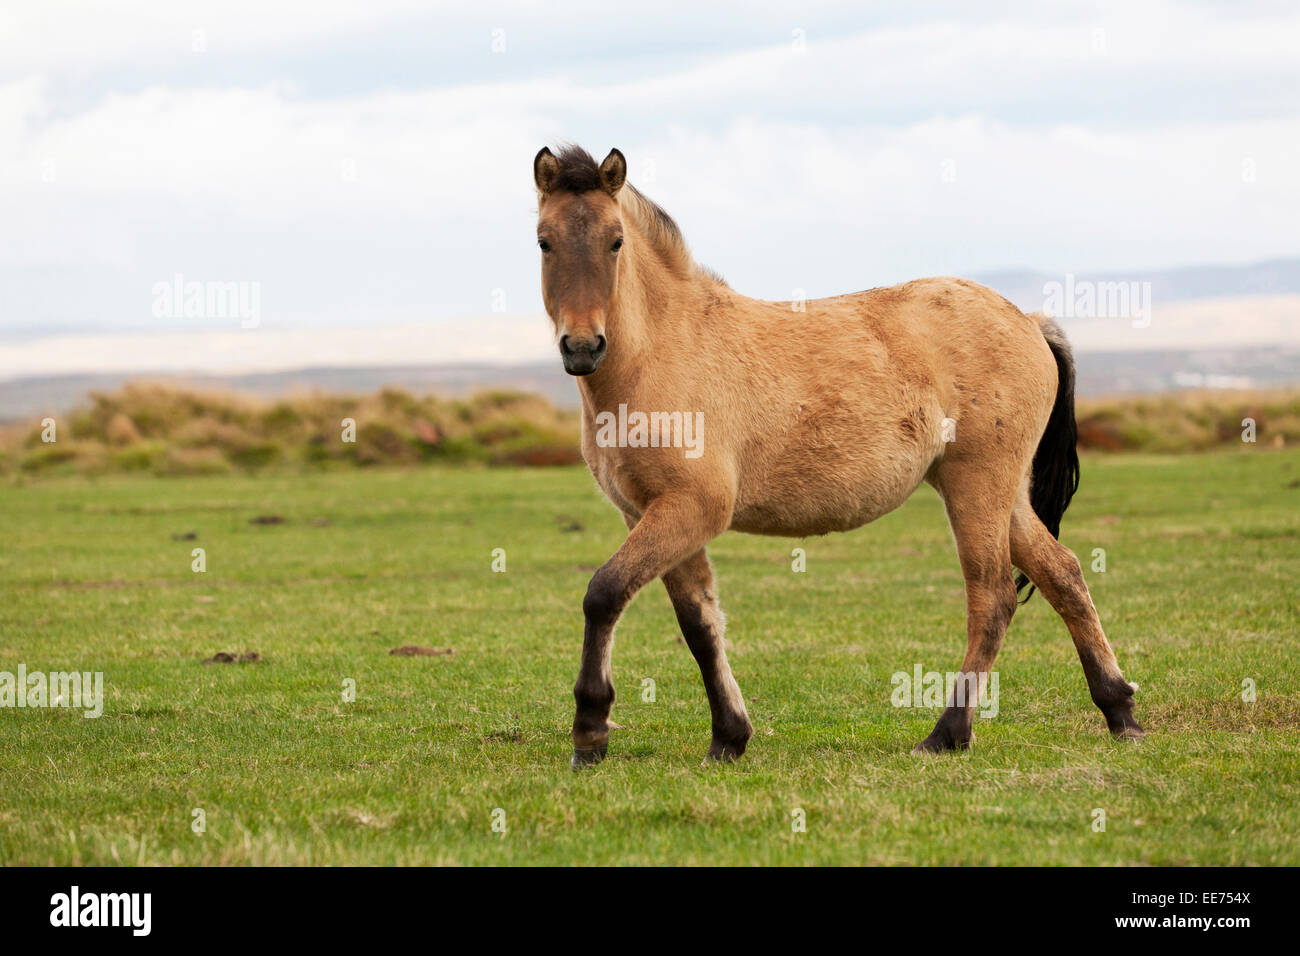 Icelandic horses on grassland, Iceland Stock Photo